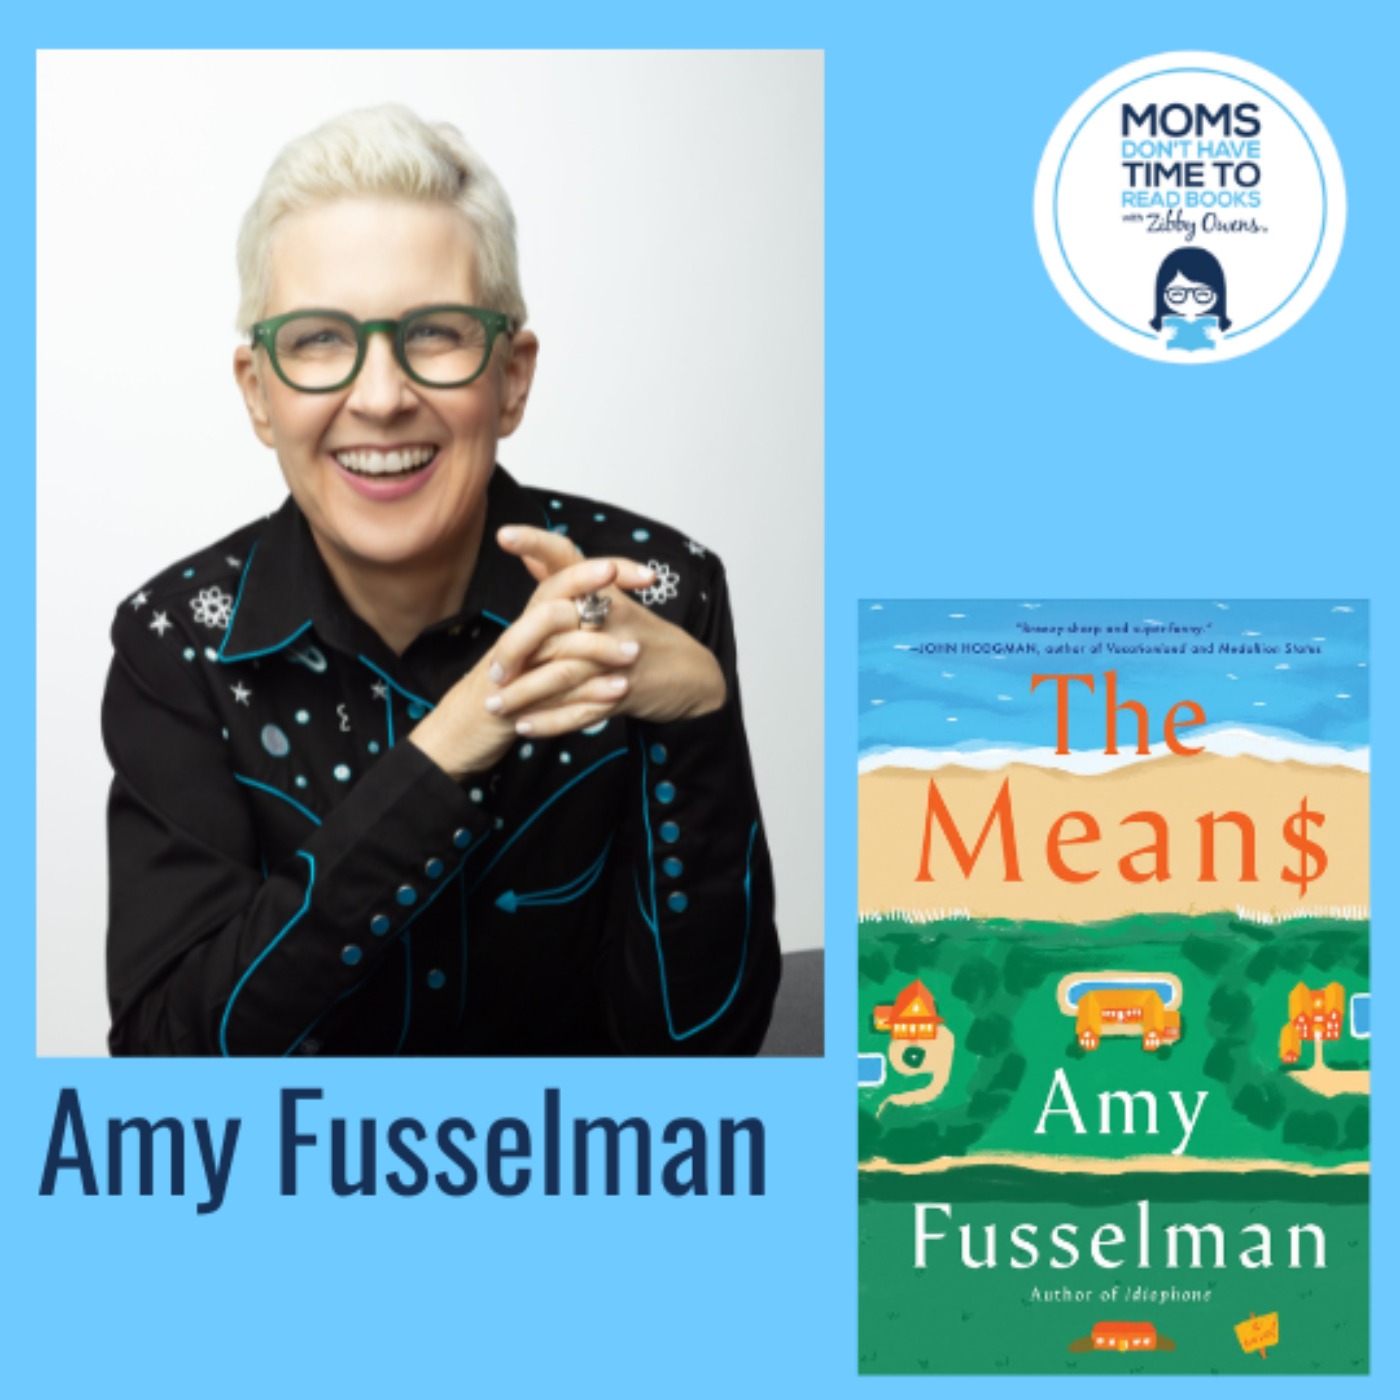 Amy Fusselman, THE MEAN$: A Novel